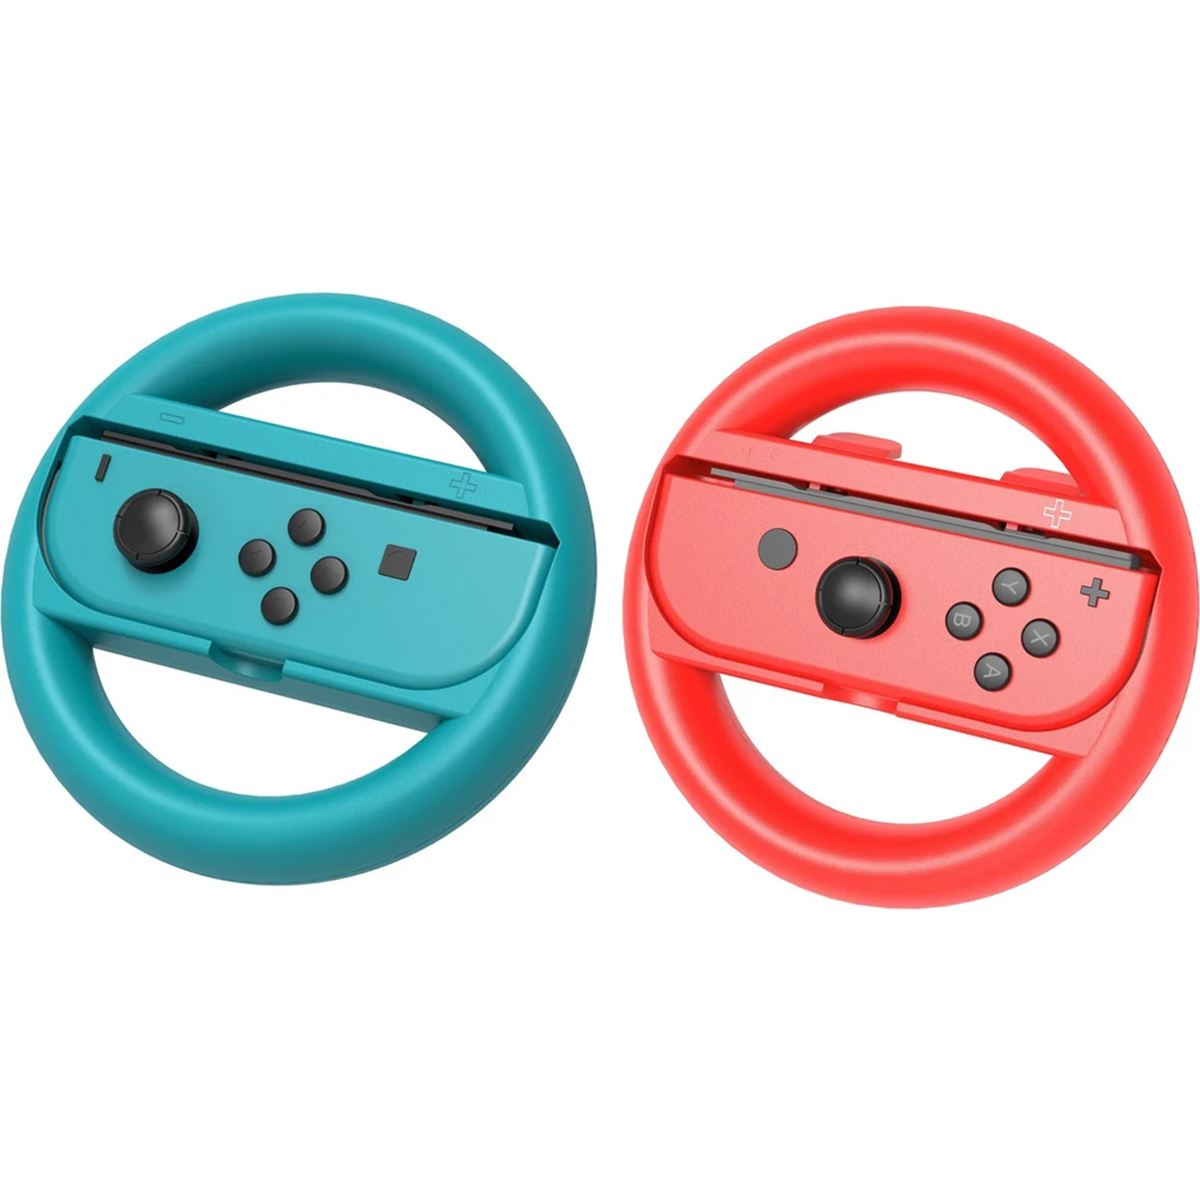 Suporti Tip Volan Ipega Sw087 Pentru Nintendo Switch Joy-con, 2 Bucati, Rosu/albastru